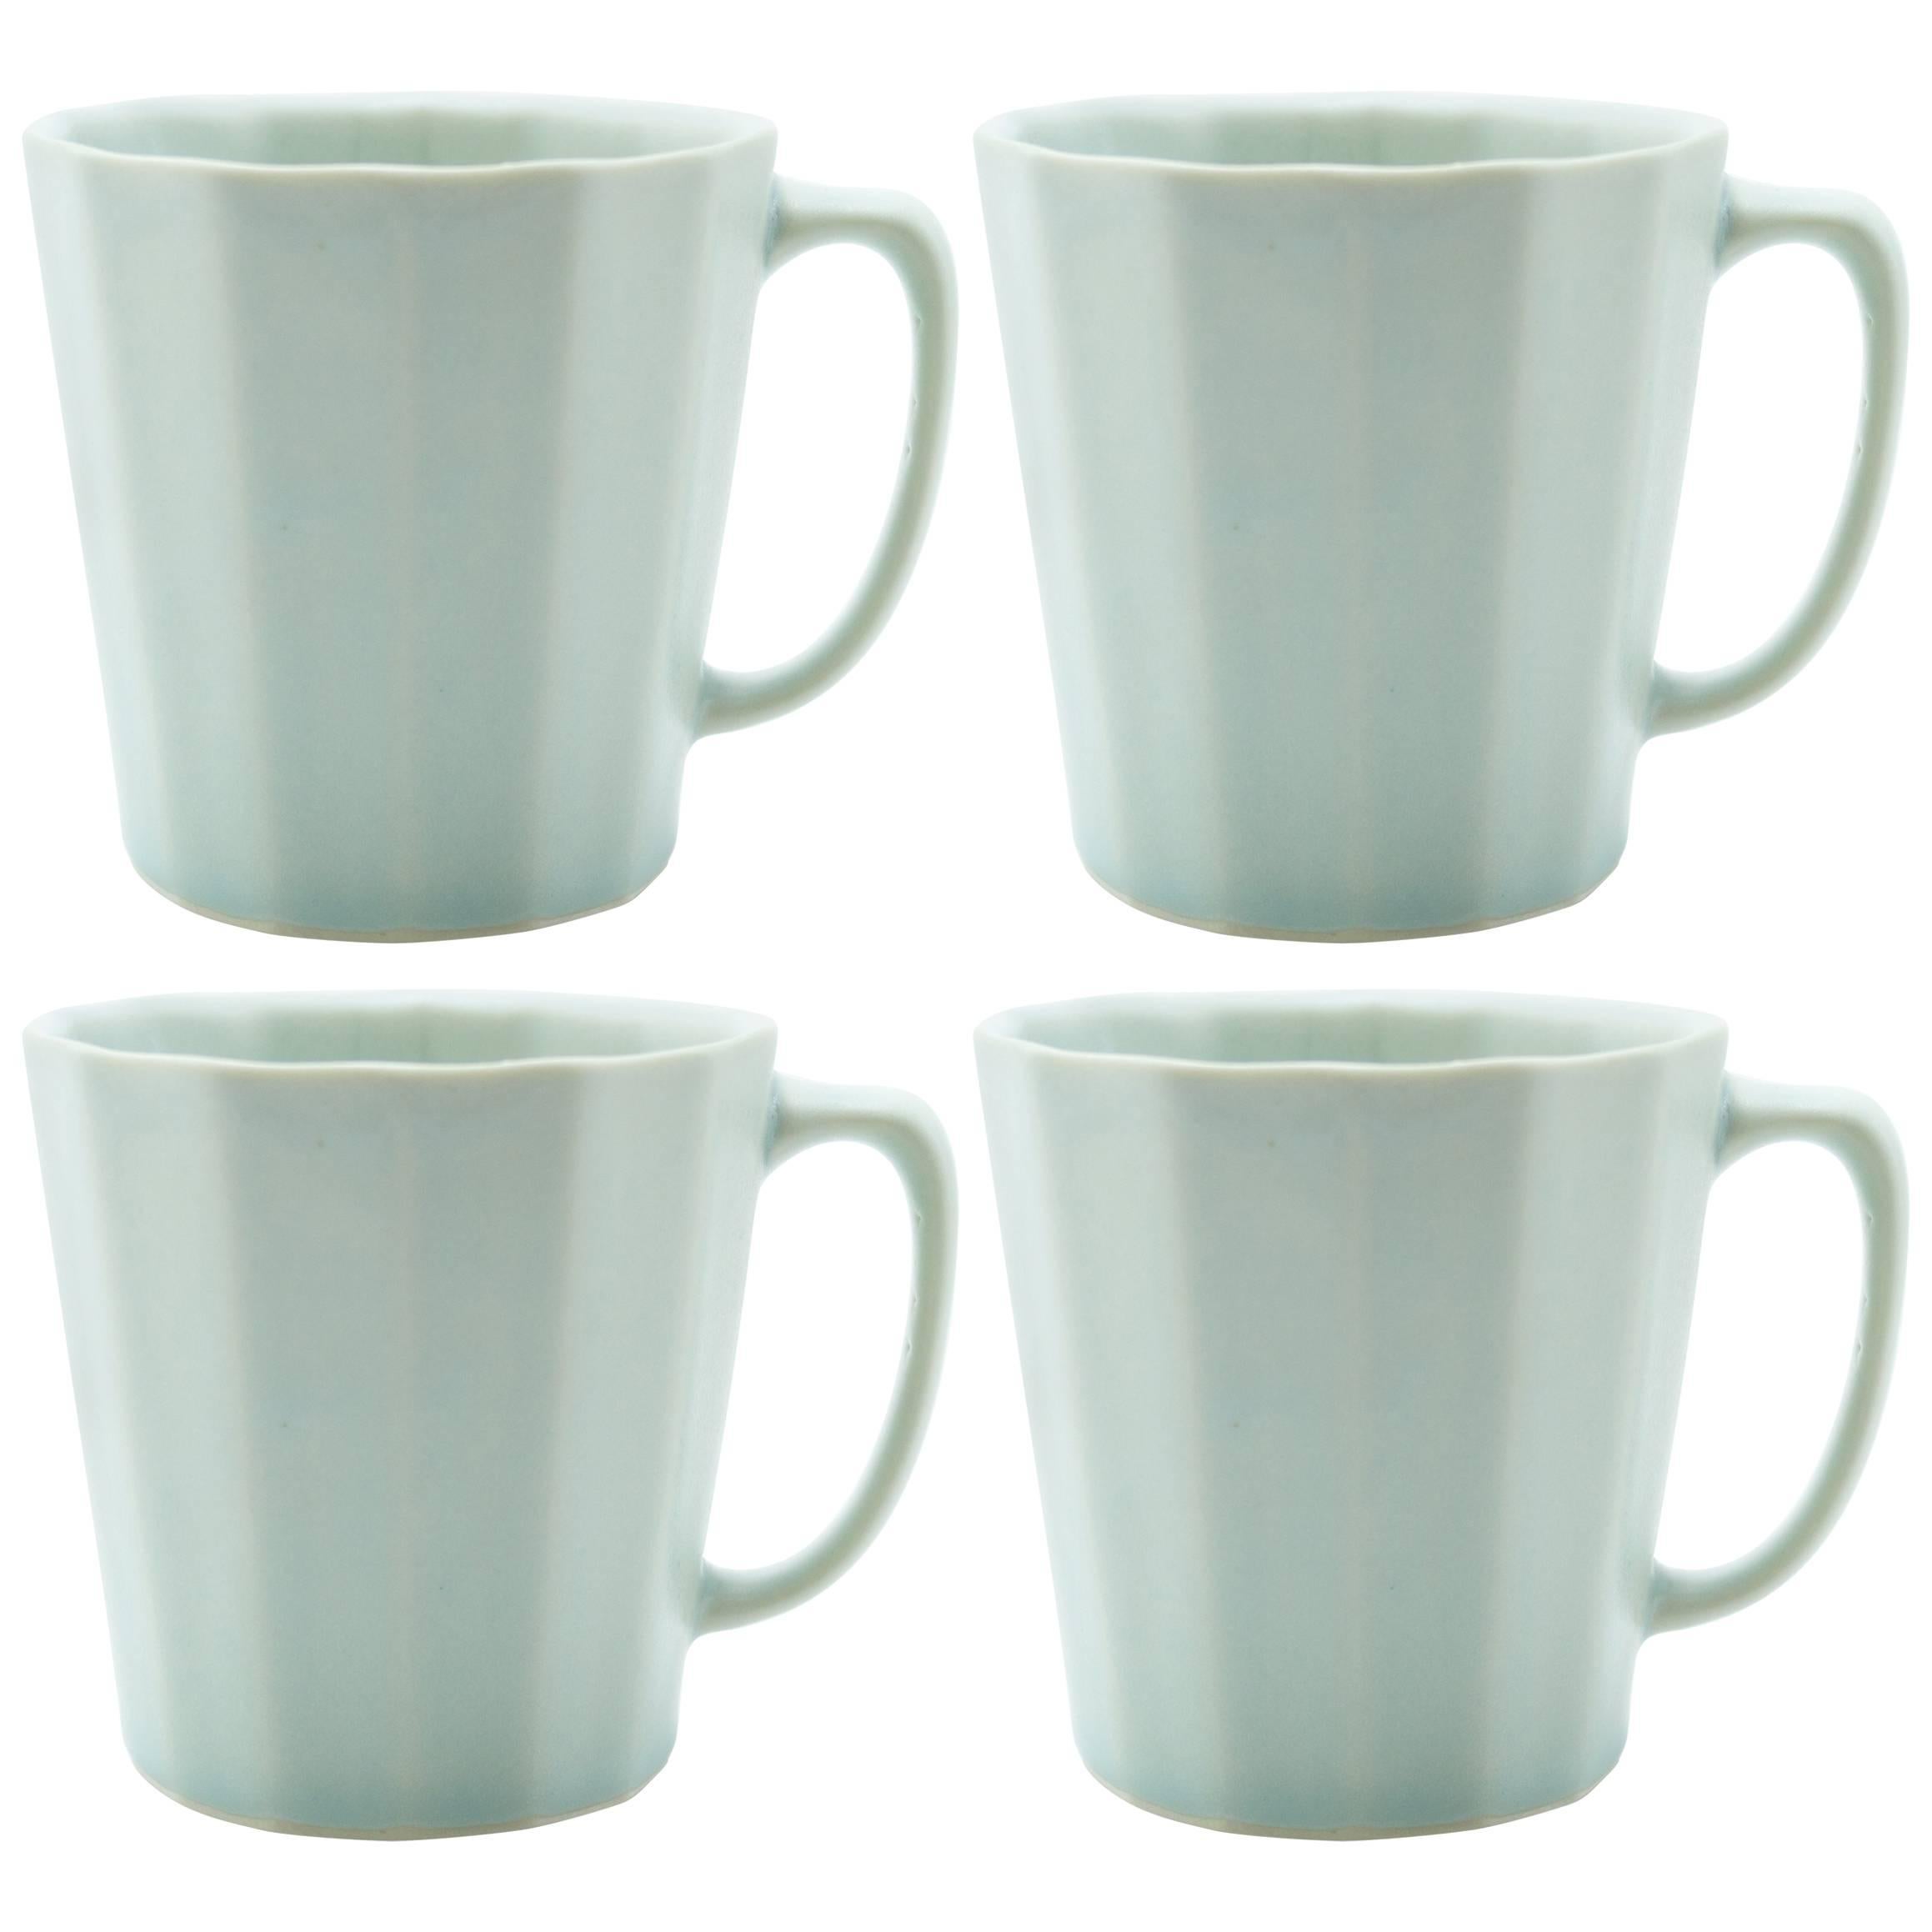 Monday Mug Blue Matte Set of Four Coffee Mug Contemporary Glazed Porcelain